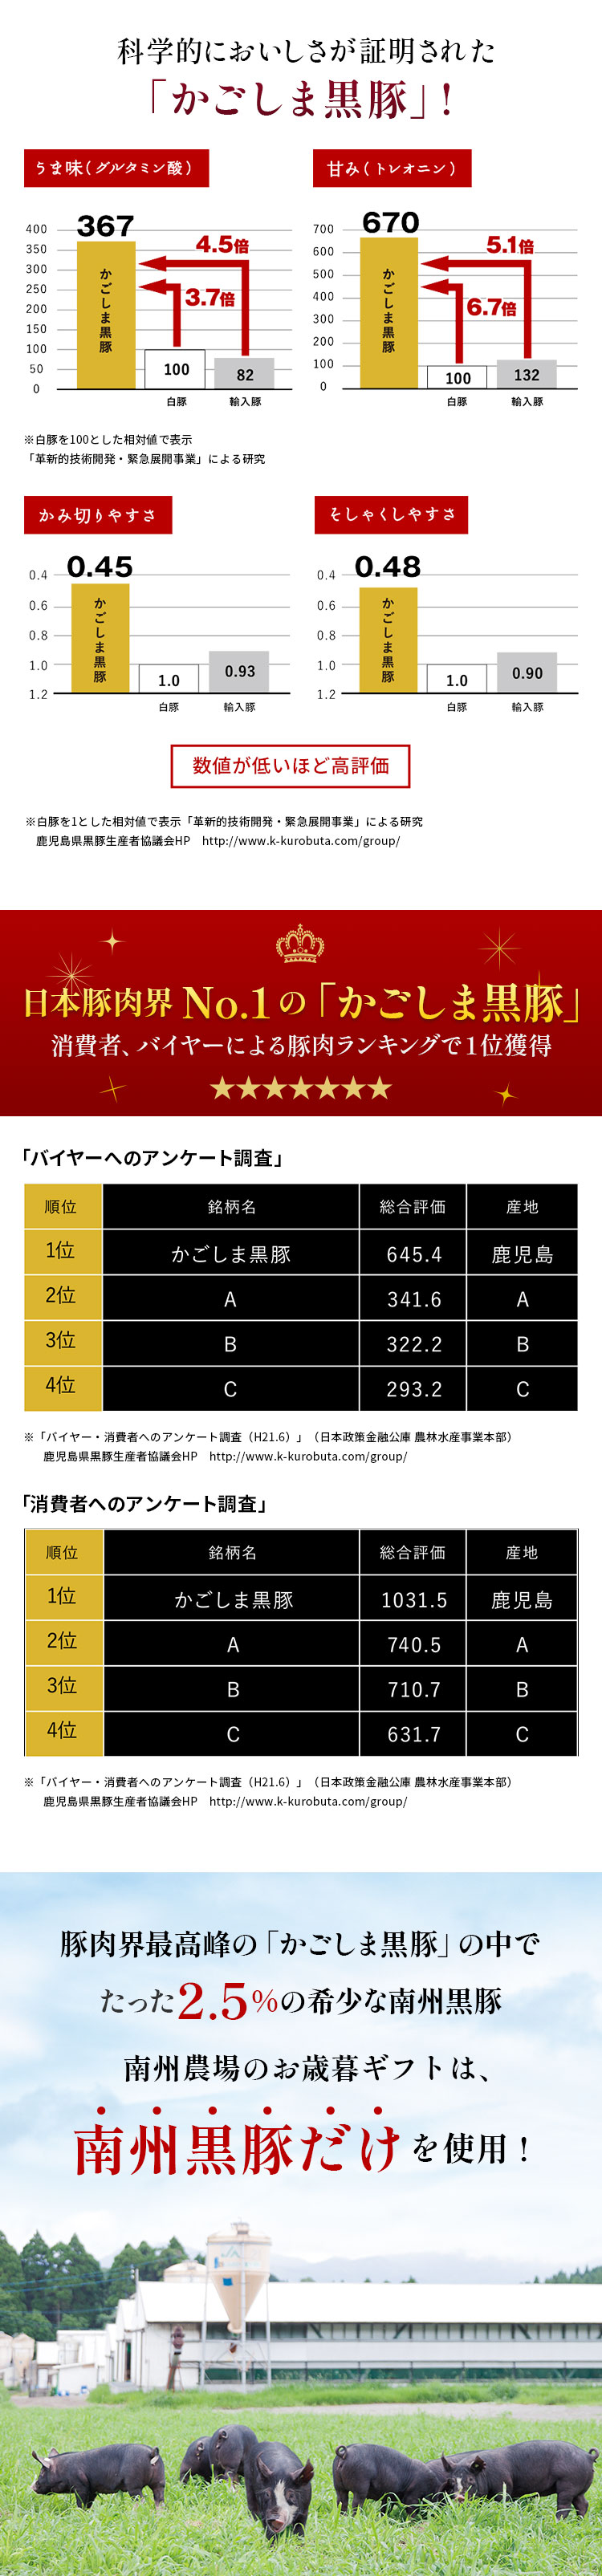 科学的においしさが証明された 「かごしま黒豚」! 日本豚肉界No.1の「かごしま黒豚」 消費者、バイヤーによる豚肉ランキングで１位獲得